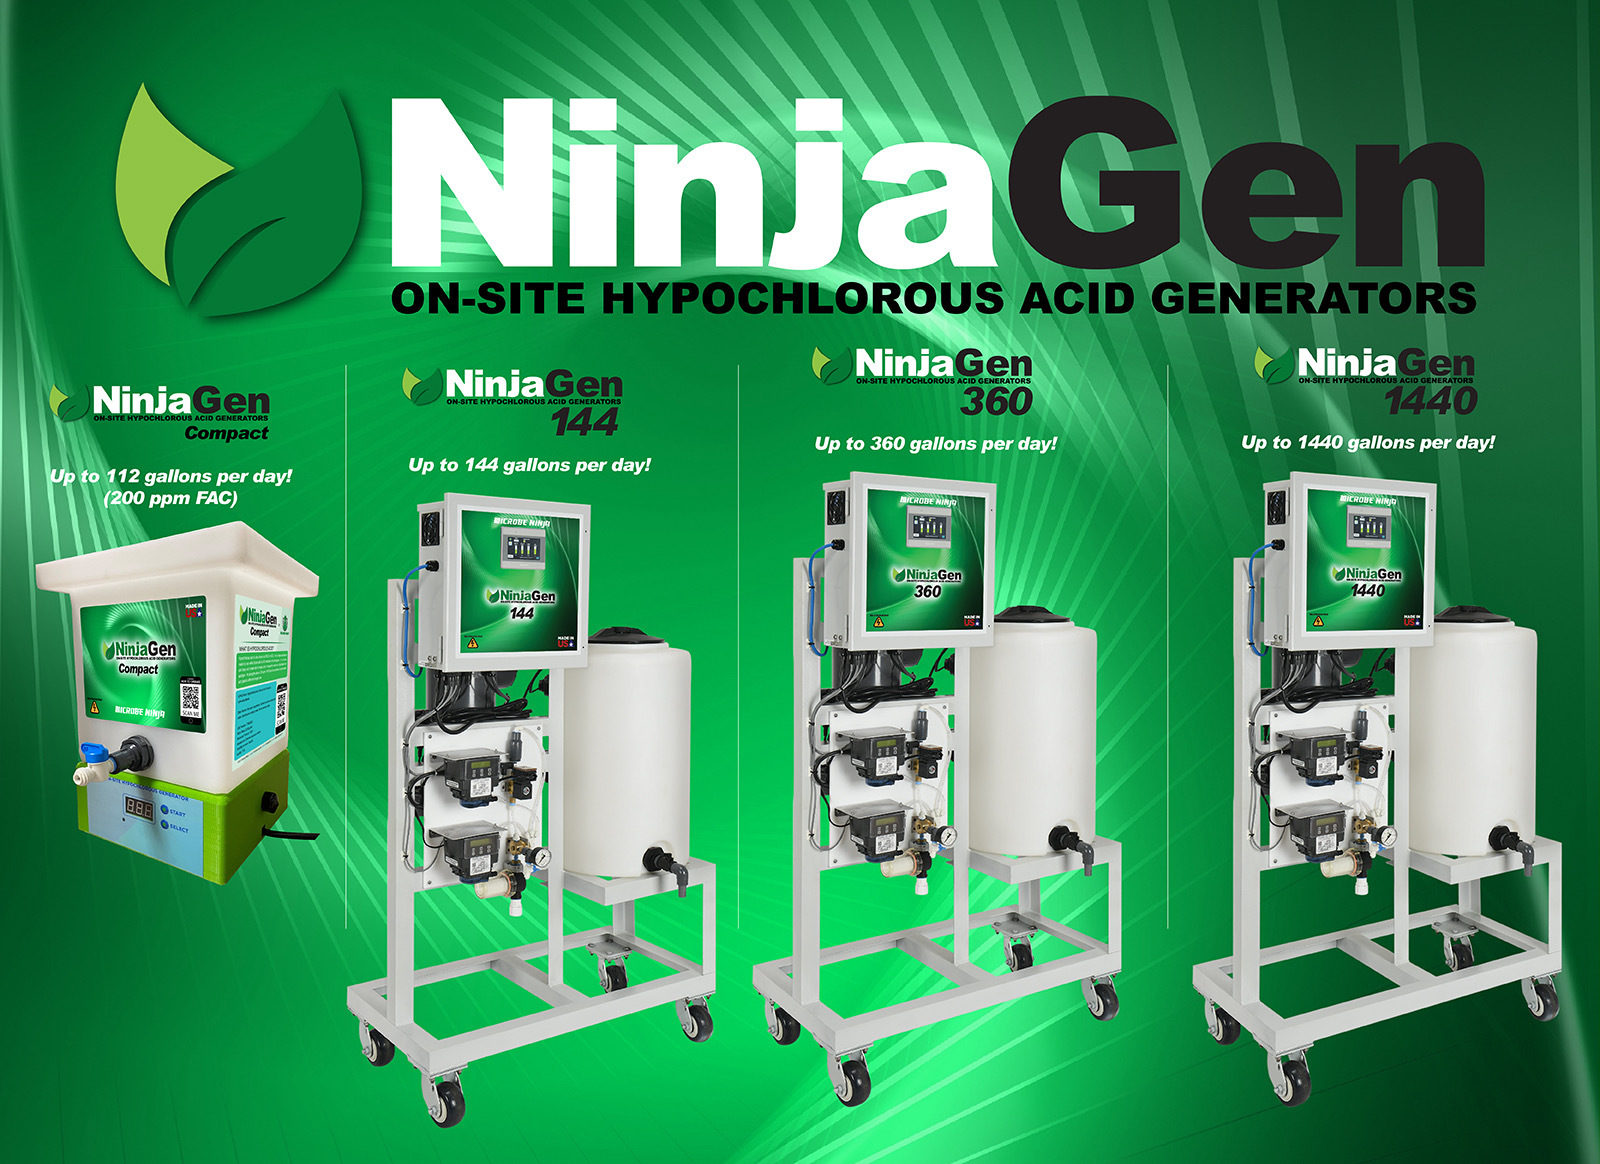 NinjaGen Onsite Hypochlorous acid generators